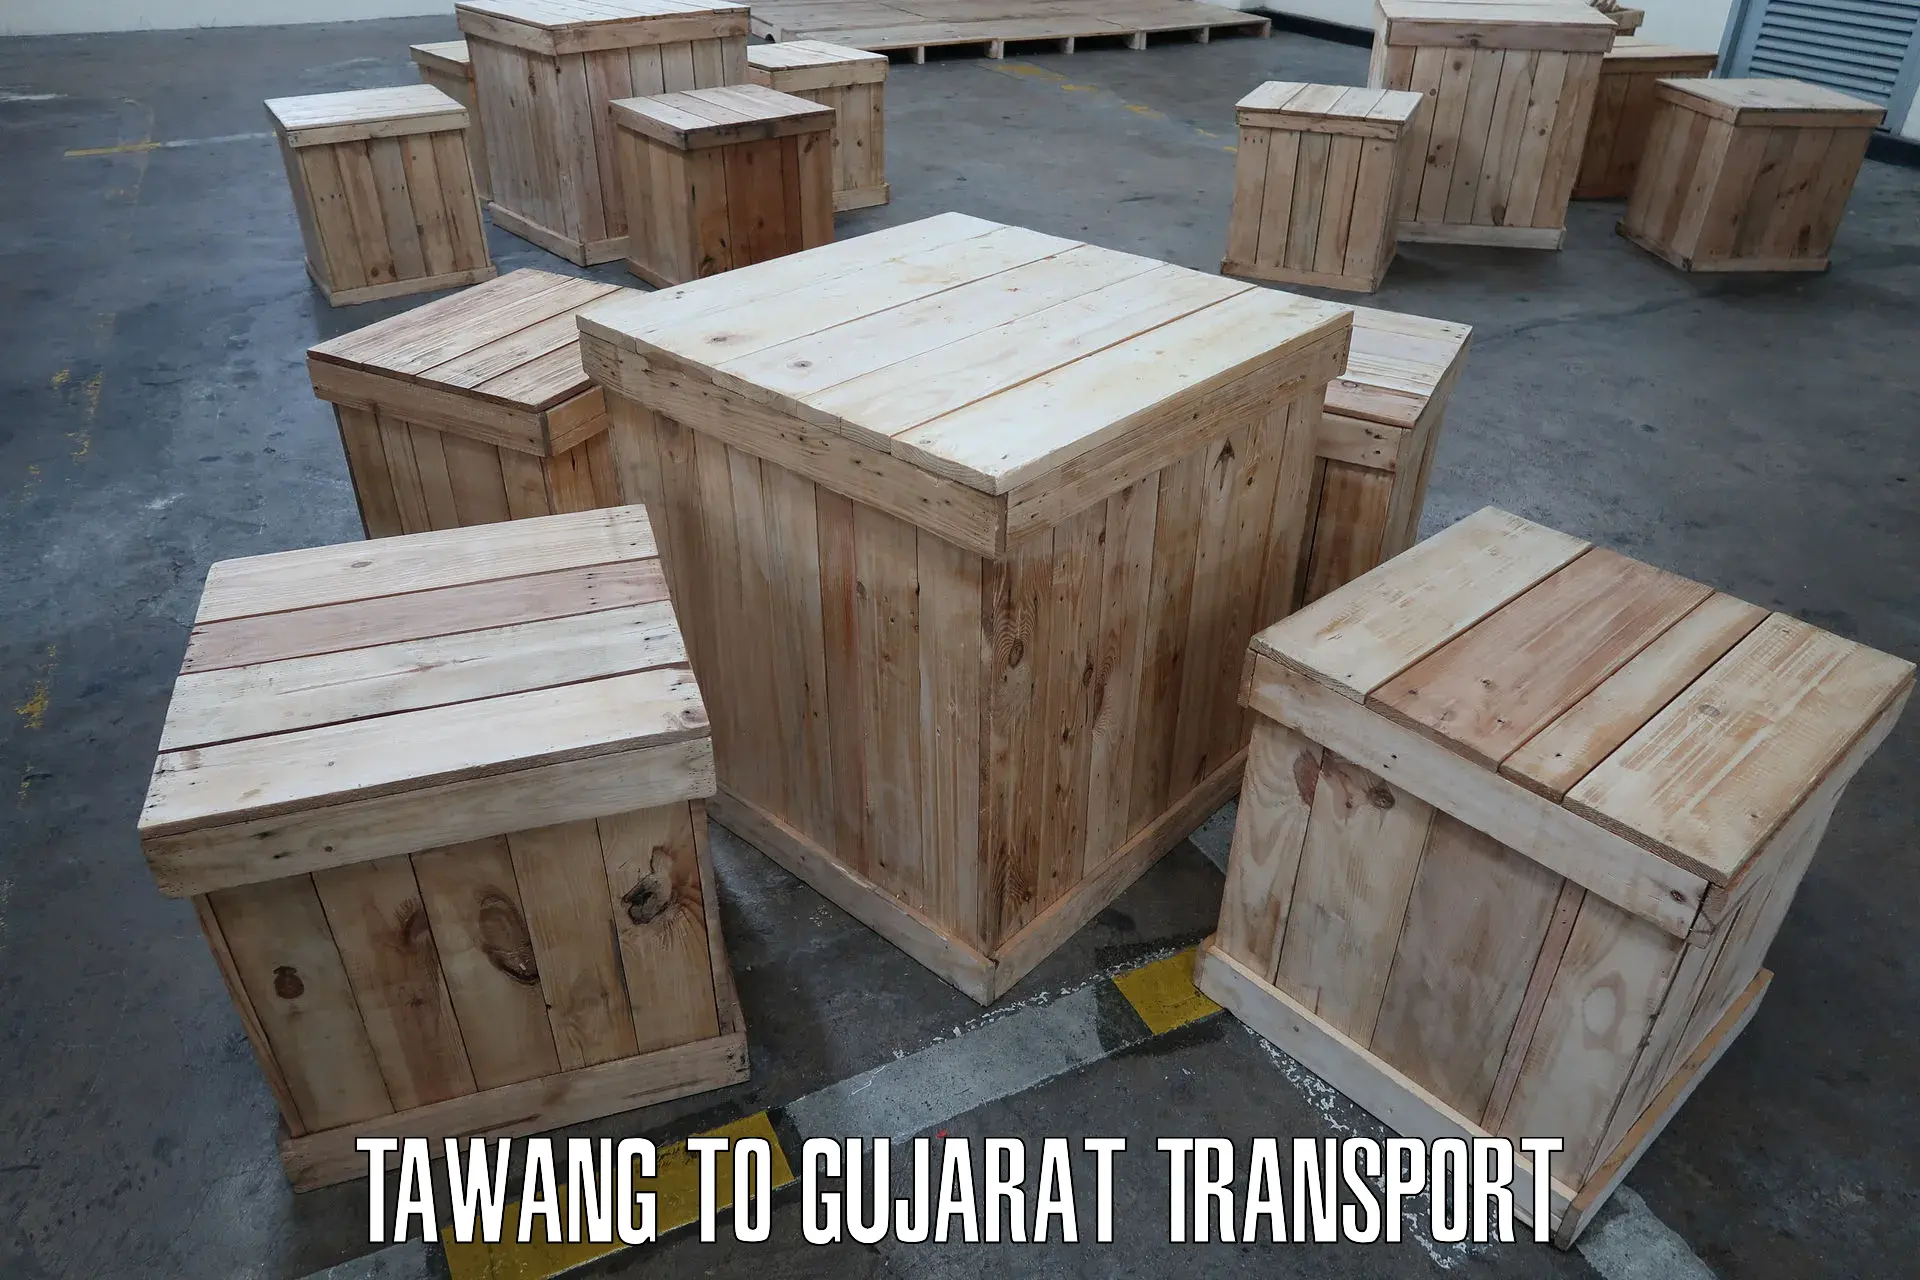 Online transport service Tawang to Bhatiya